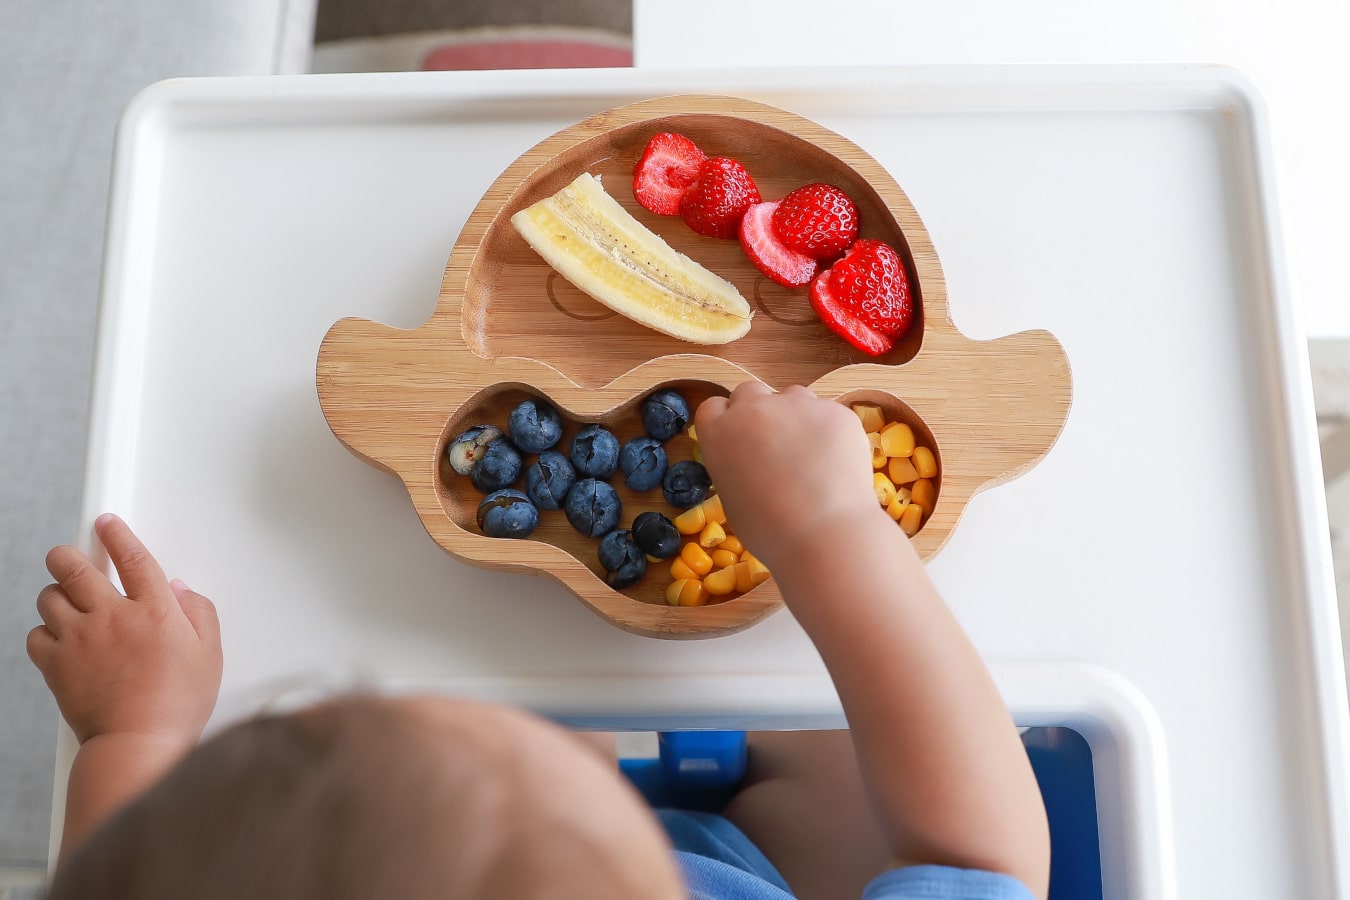 Su un piatto di legno con divisori, si può vedere la frutta e verdura multicolori: banane, mirtilli, mais e fragole. Il bambino prende il cibo.